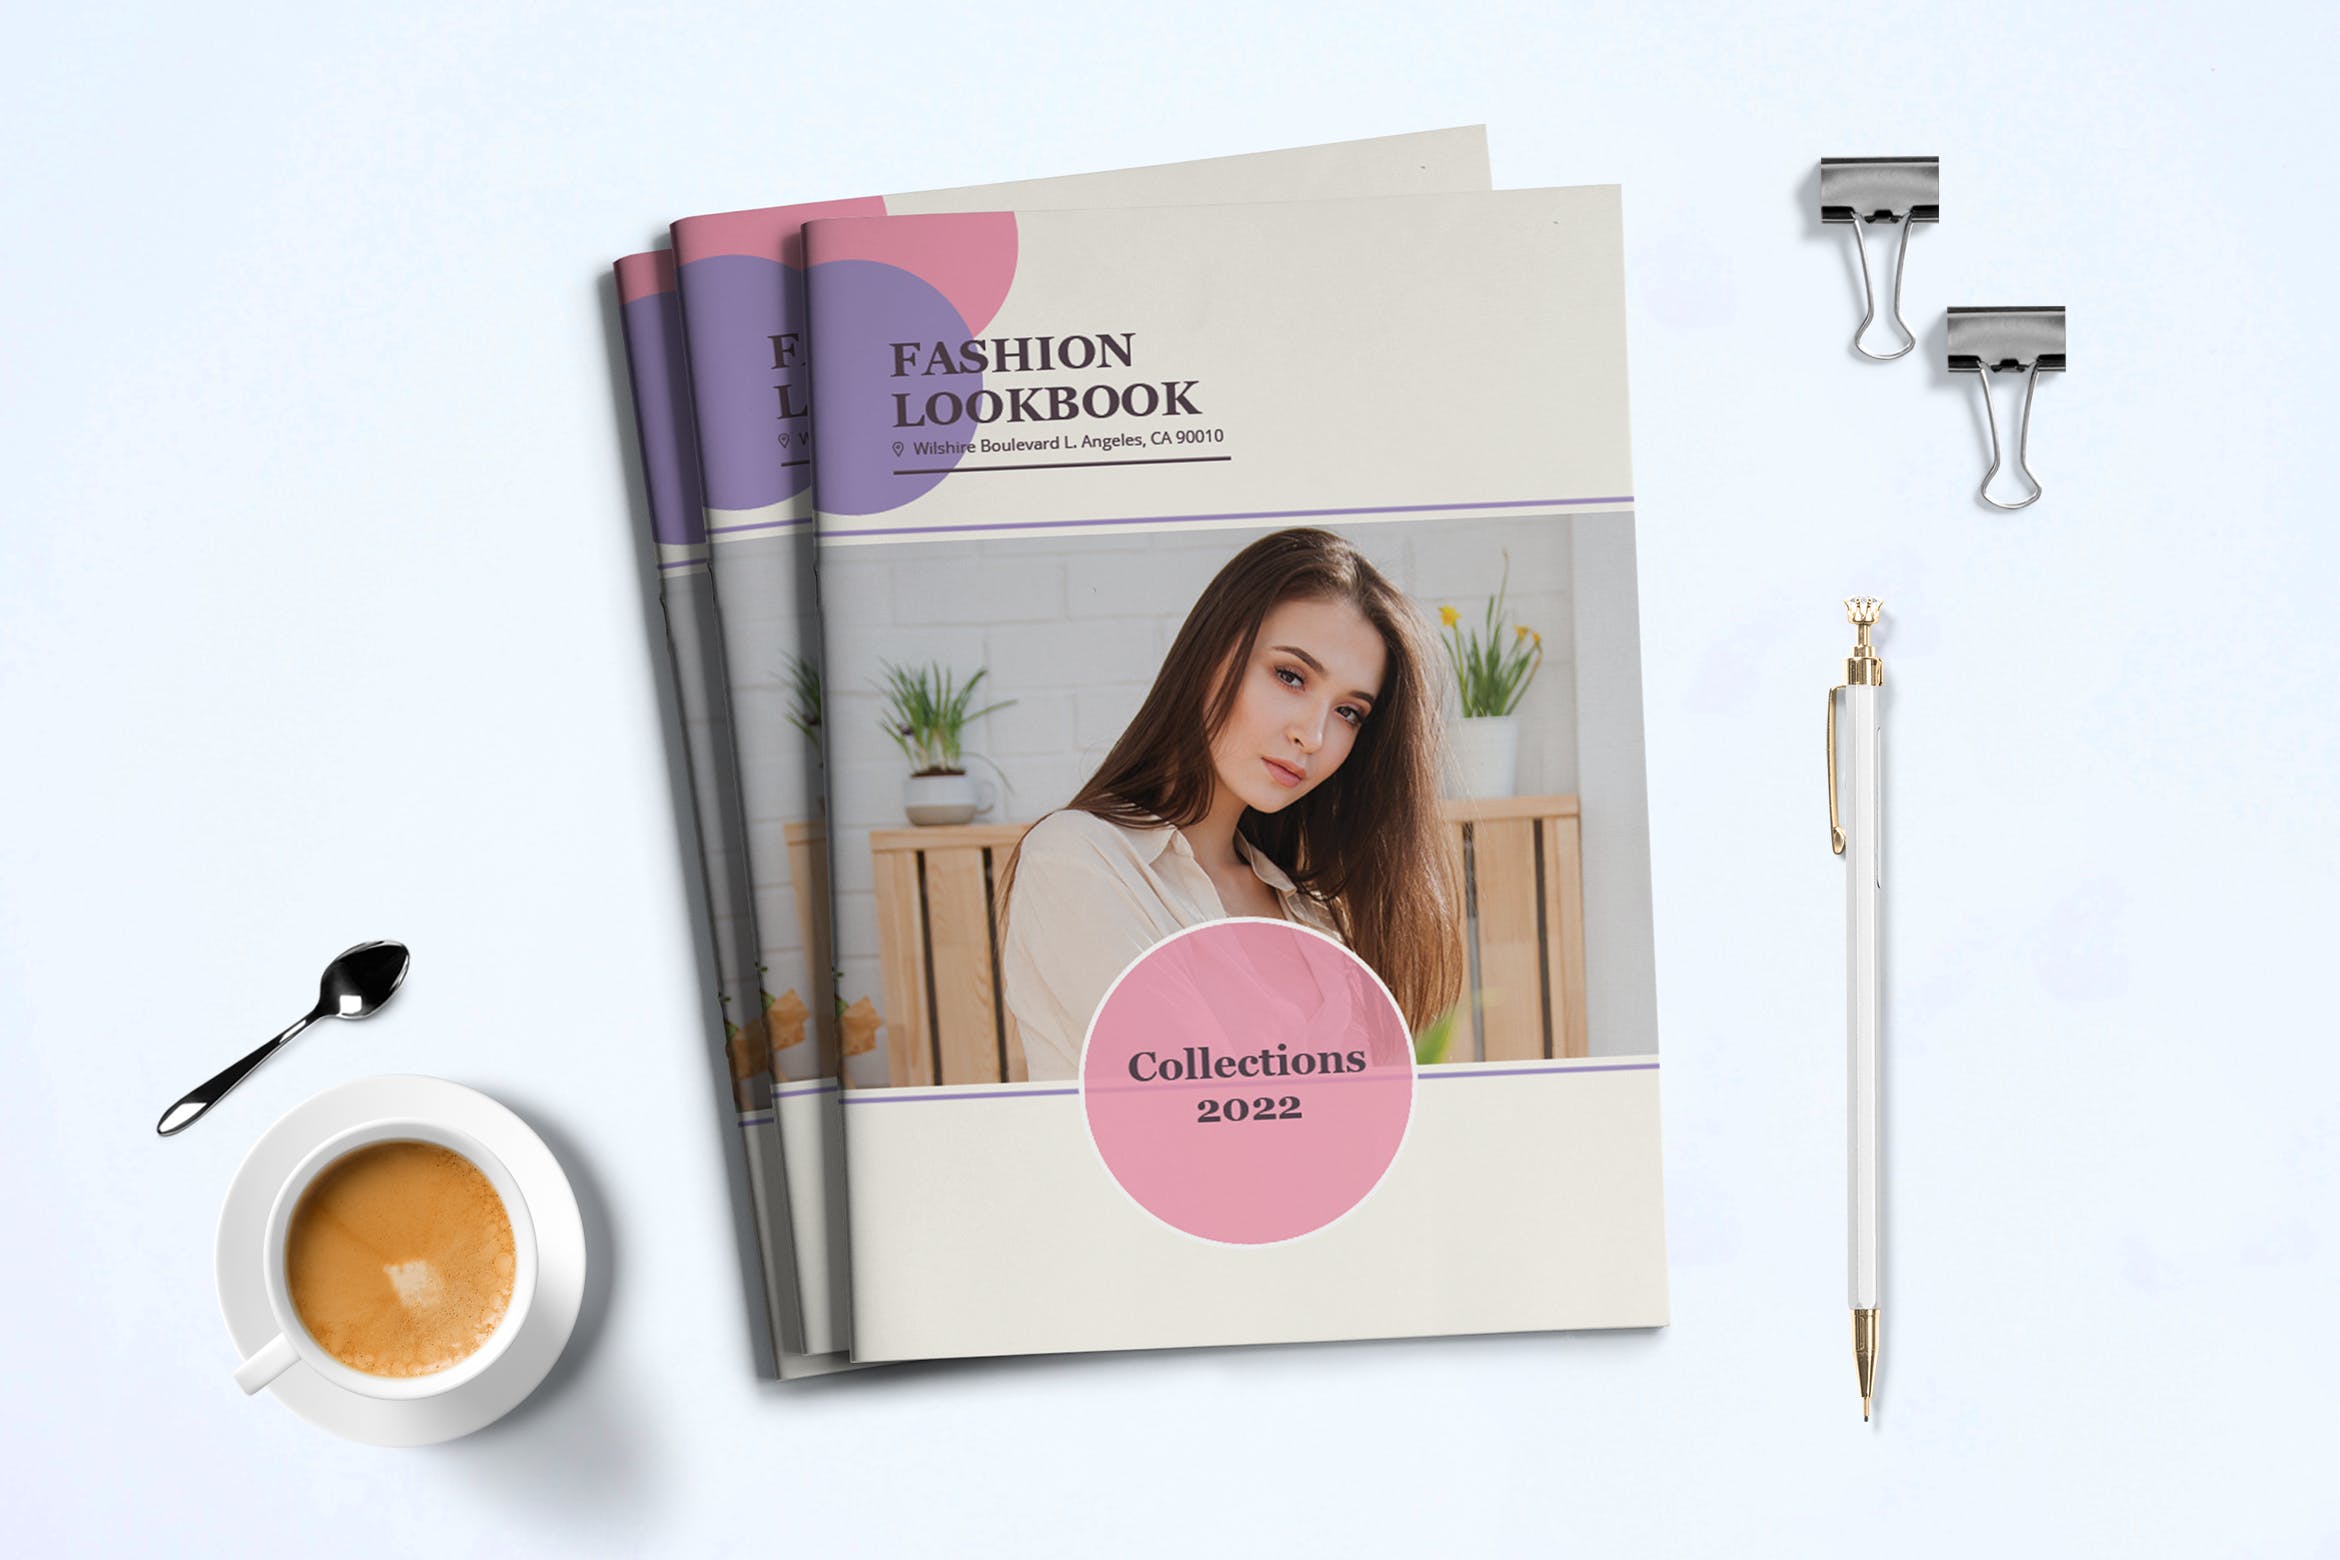 时装订货画册/新品上市产品非凡图库精选目录设计模板v3 Fashion Lookbook Template插图